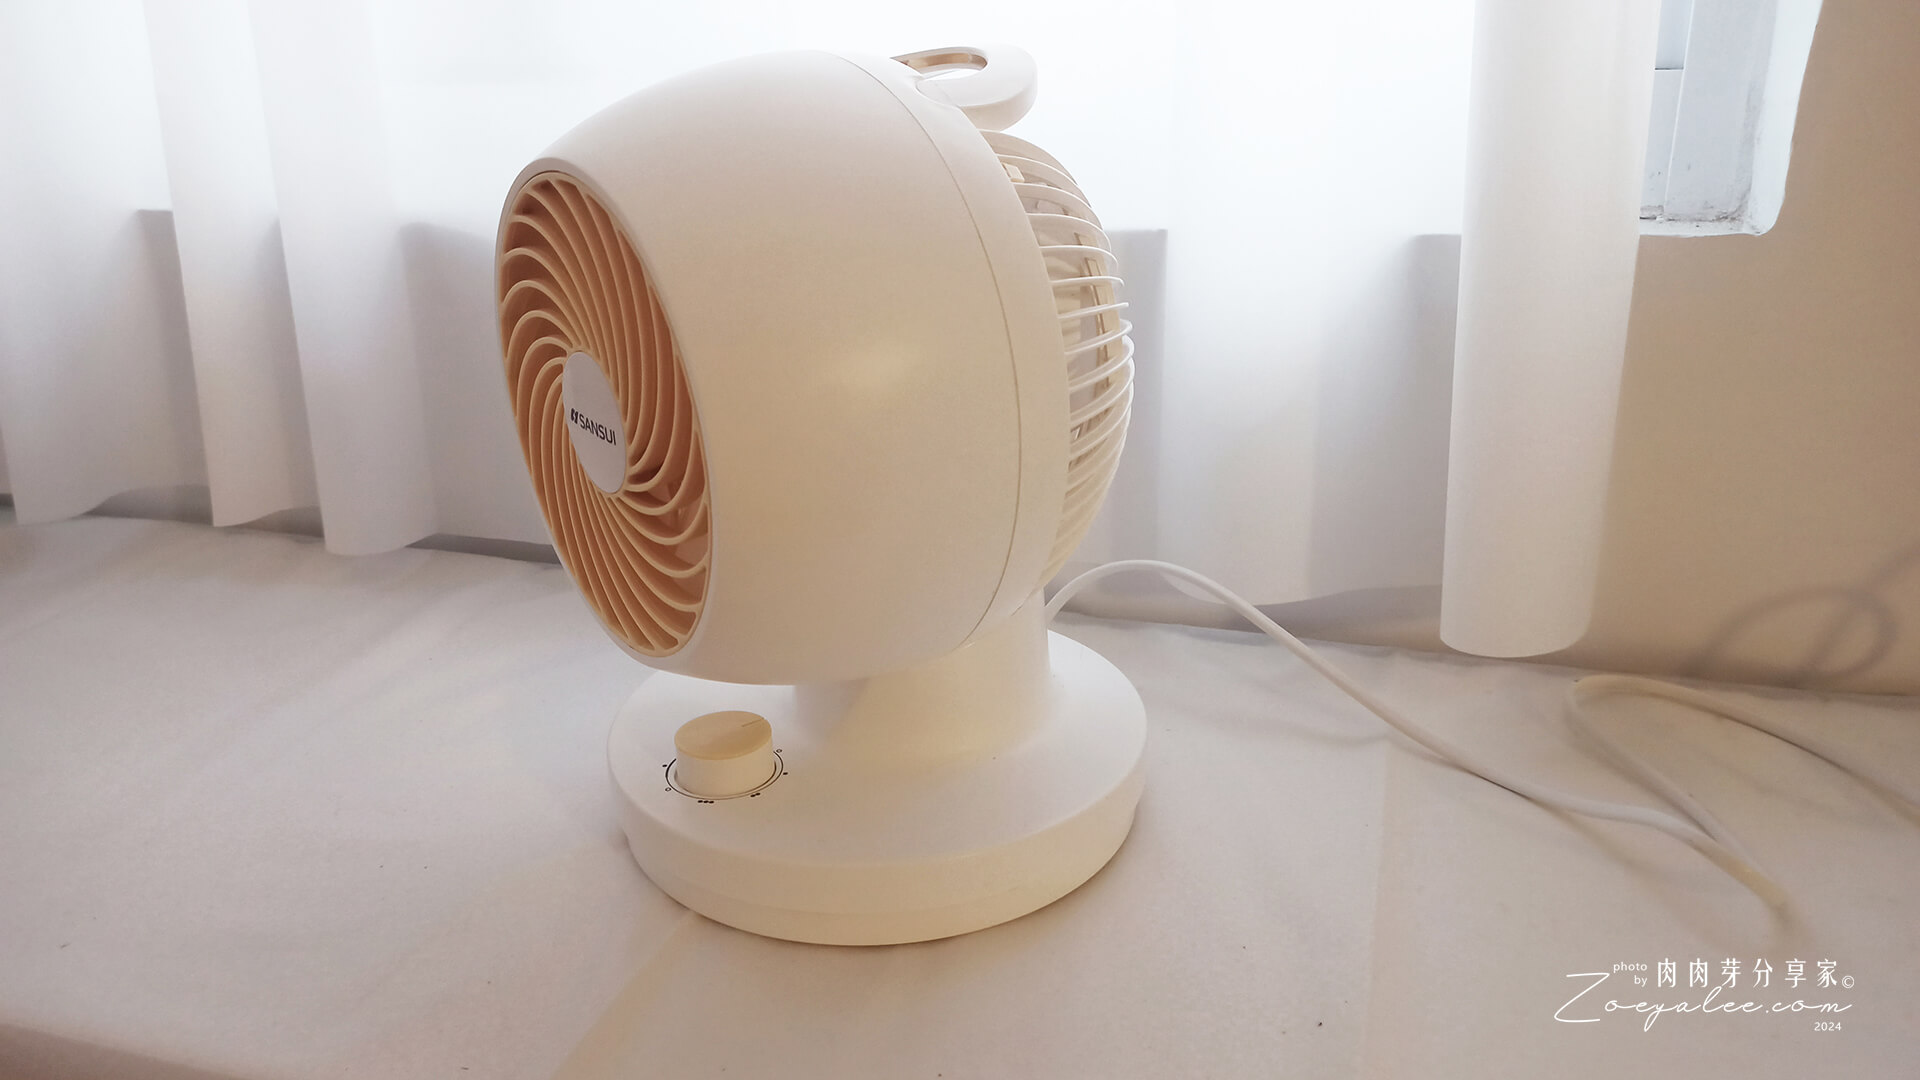 SANSUI山水-空氣循環扇,風柱渦漩氣流,輕巧可攜帶,冷房暖房乾衣更快速!SDF-93M2體驗開箱